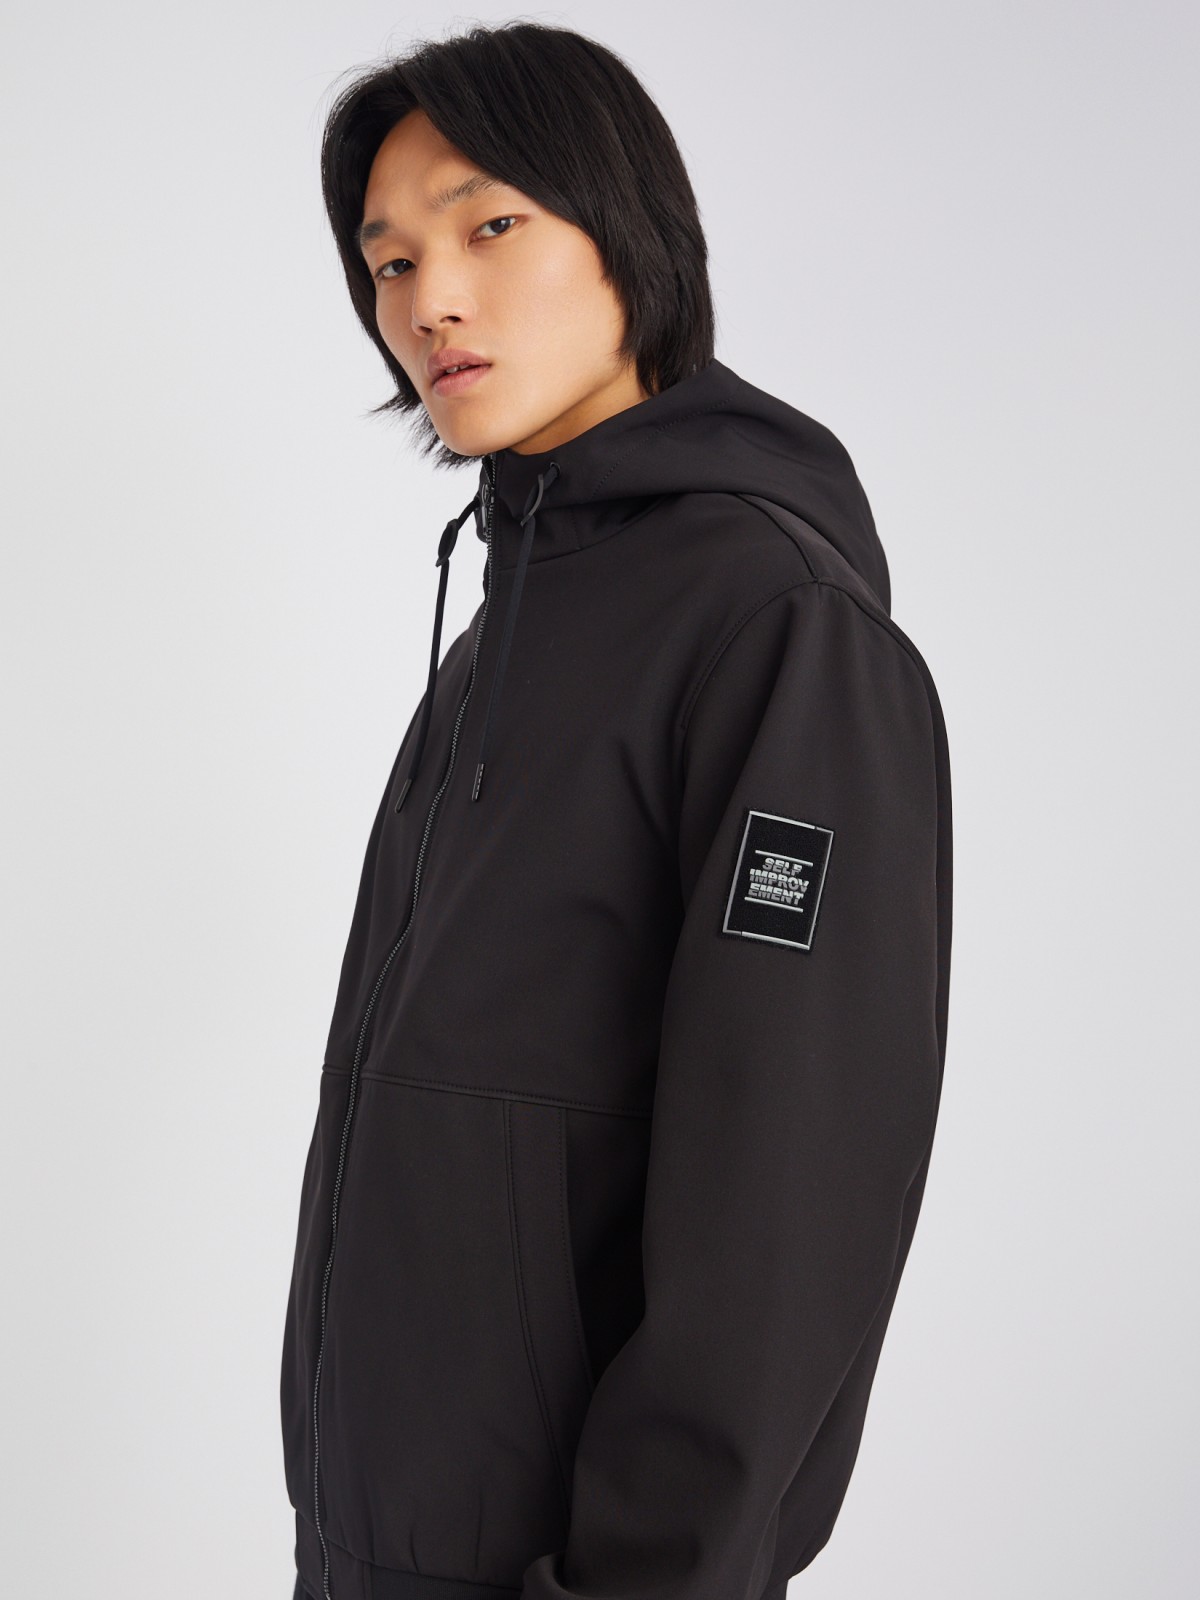 Лёгкая куртка-ветровка без утеплителя с капюшоном zolla 013325602024, цвет черный, размер S - фото 3